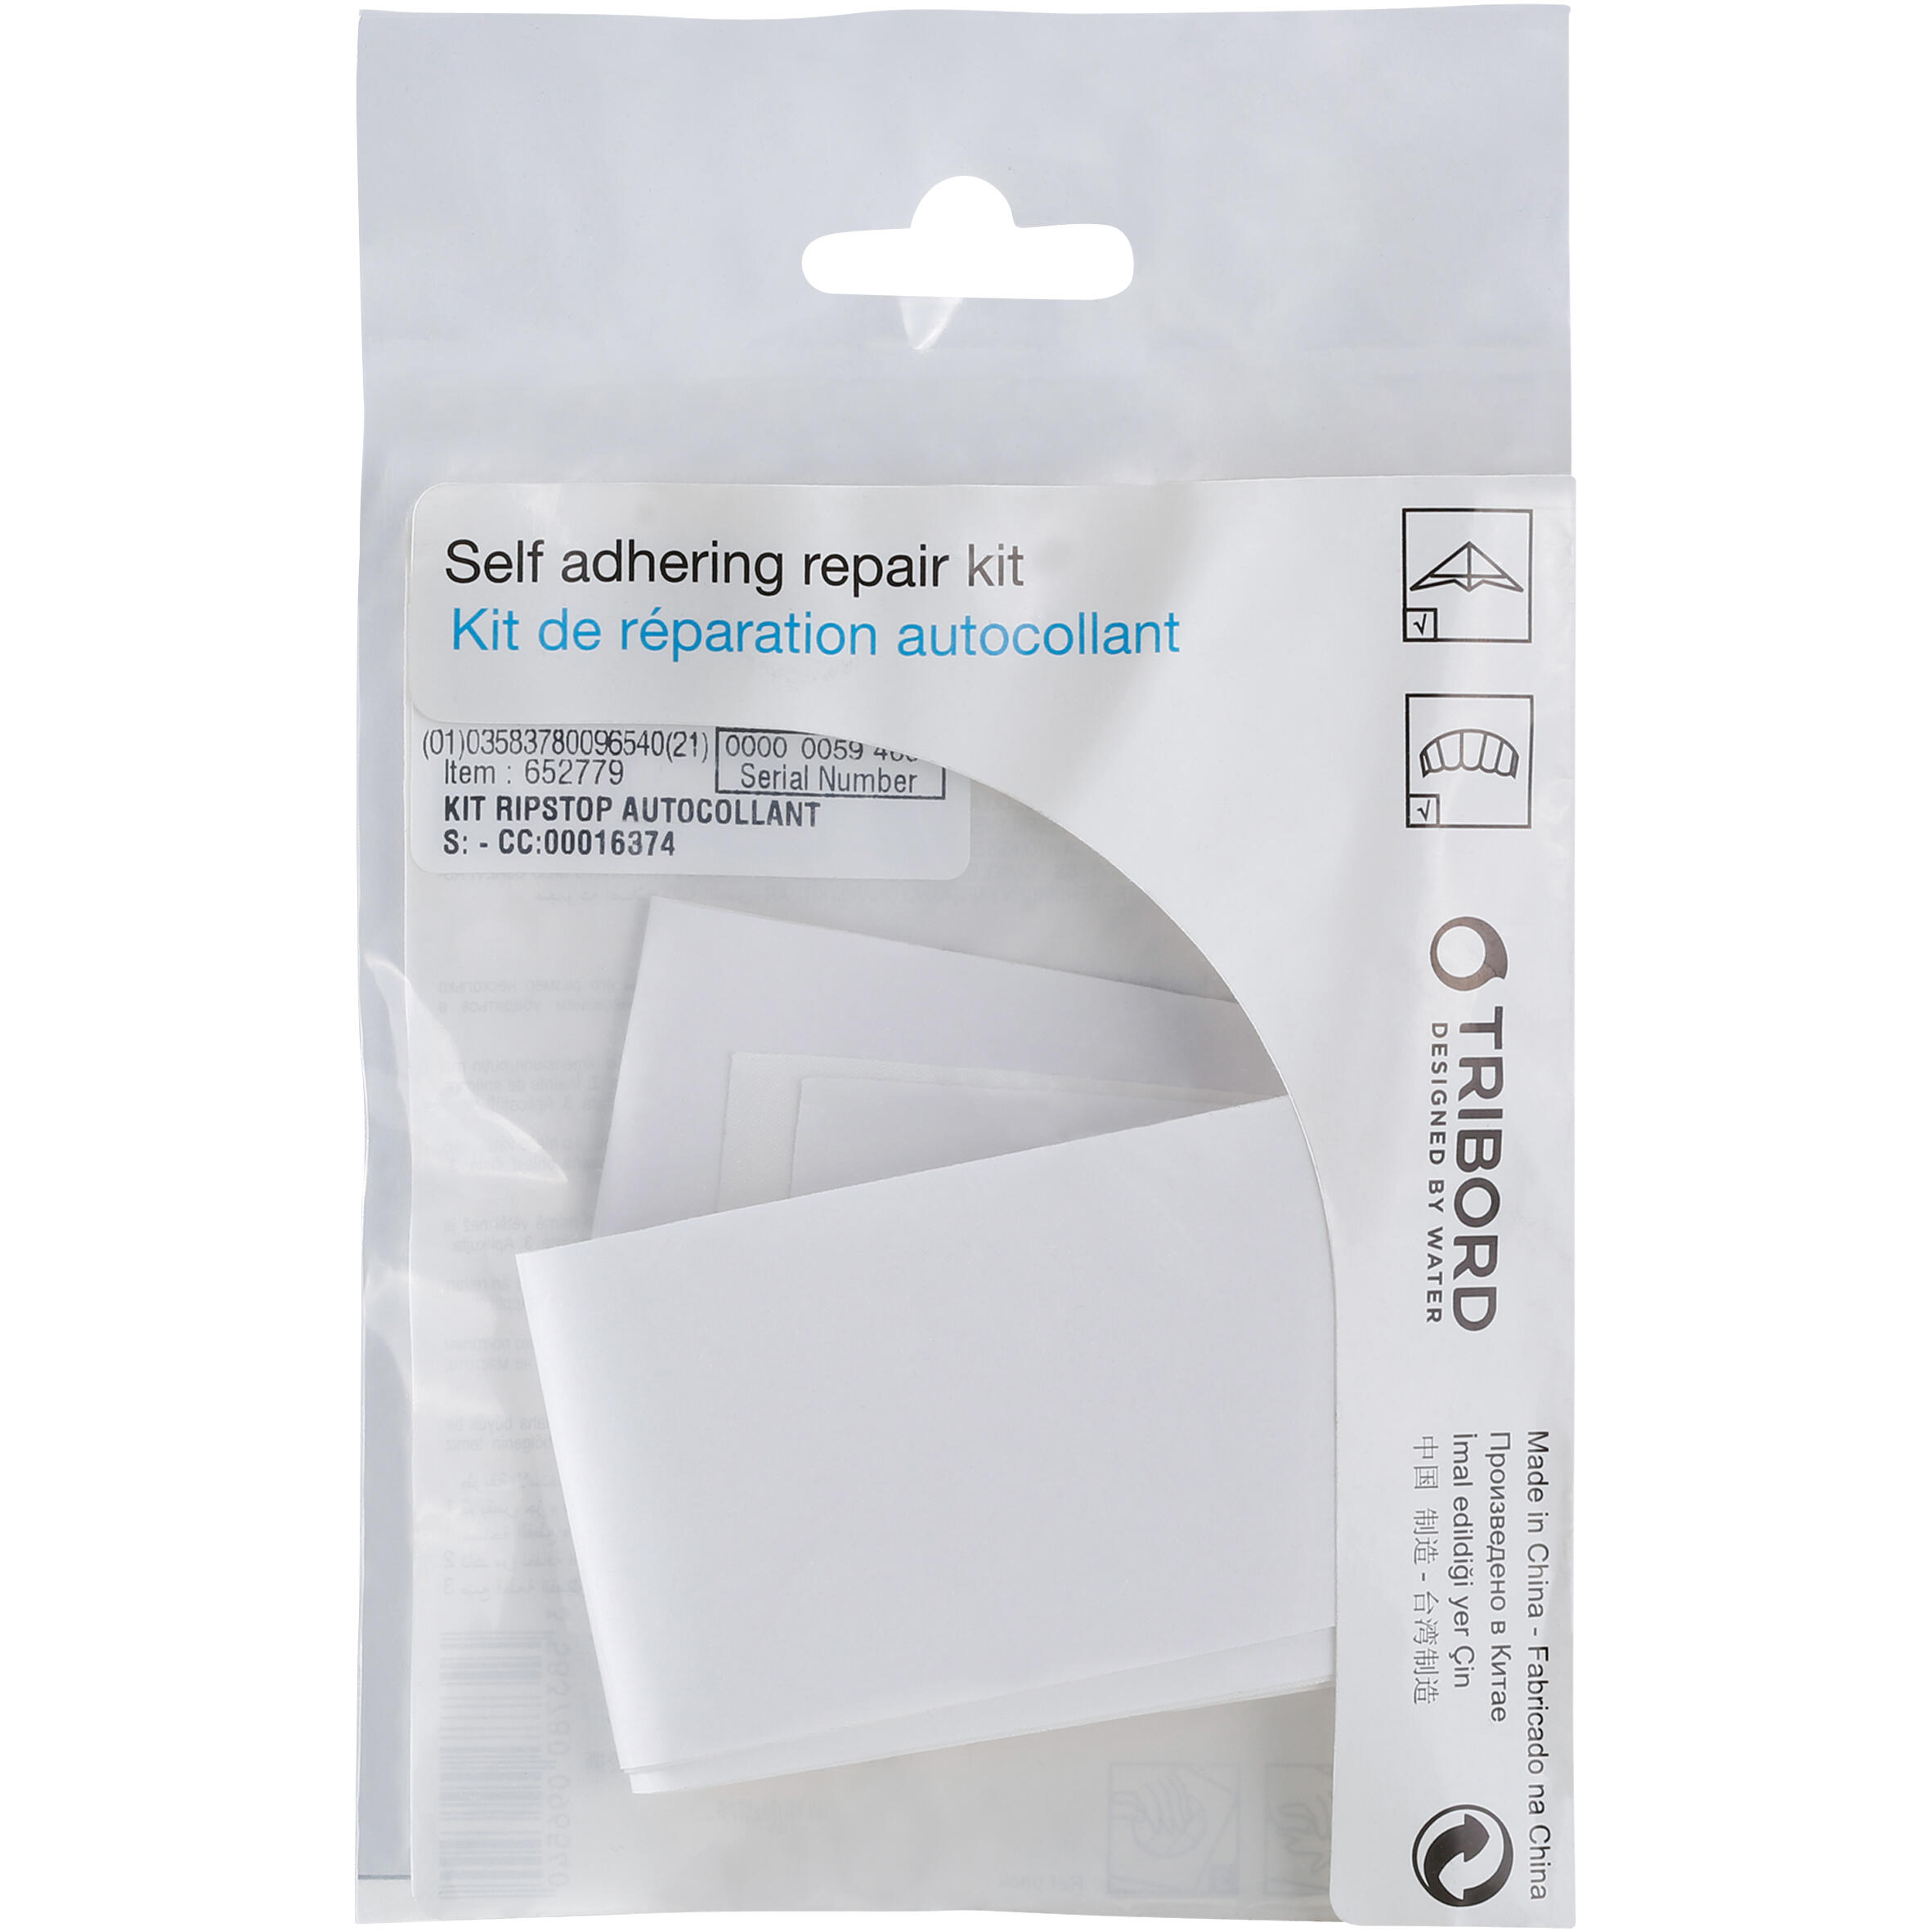 ORAO Self-Adhesive Fabric Repair Tape Kit